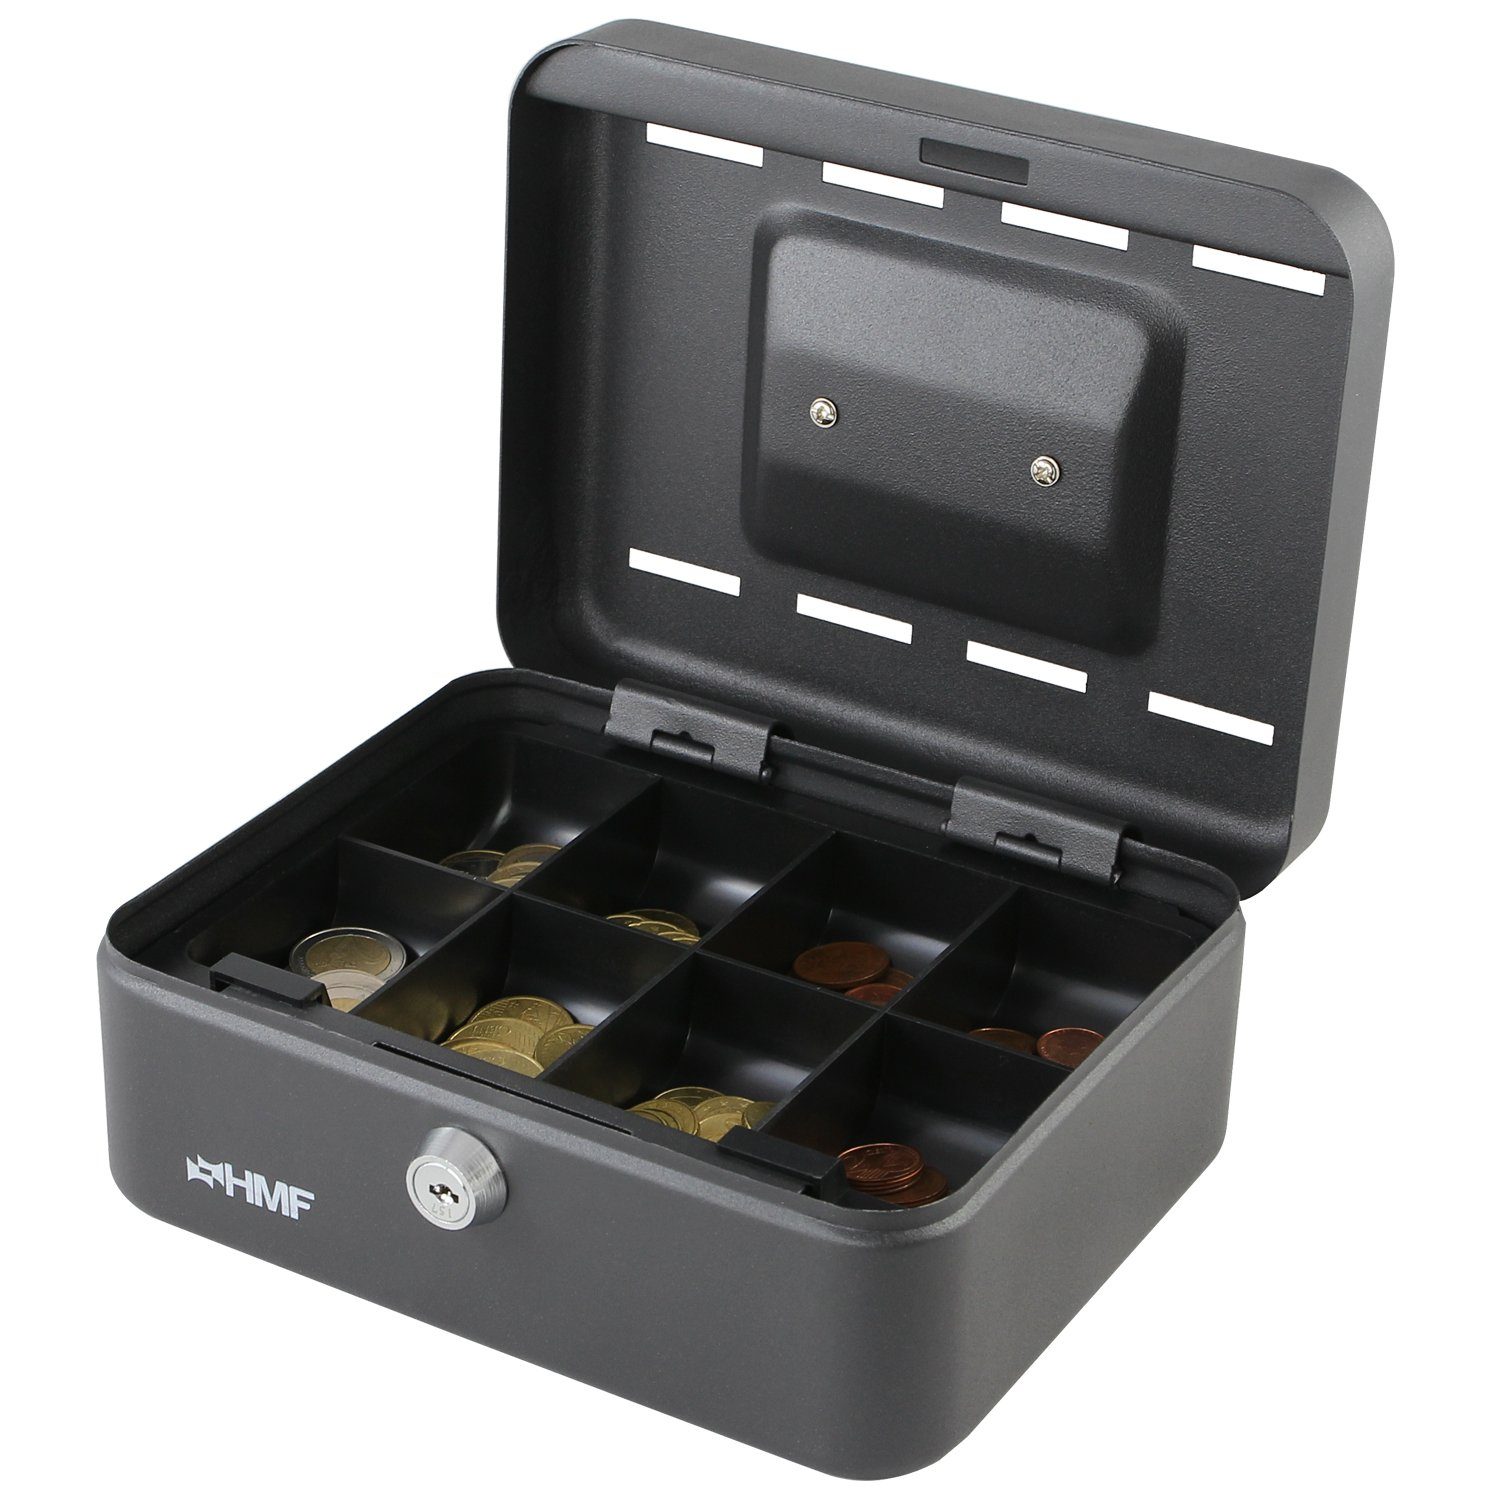 20x16x9 robuste mit Einwurfschlitzen, mit HMF Geldbox schwarz Geldkassette Schlüssel, cm Sparkassette, Bargeldkasse abschließbare